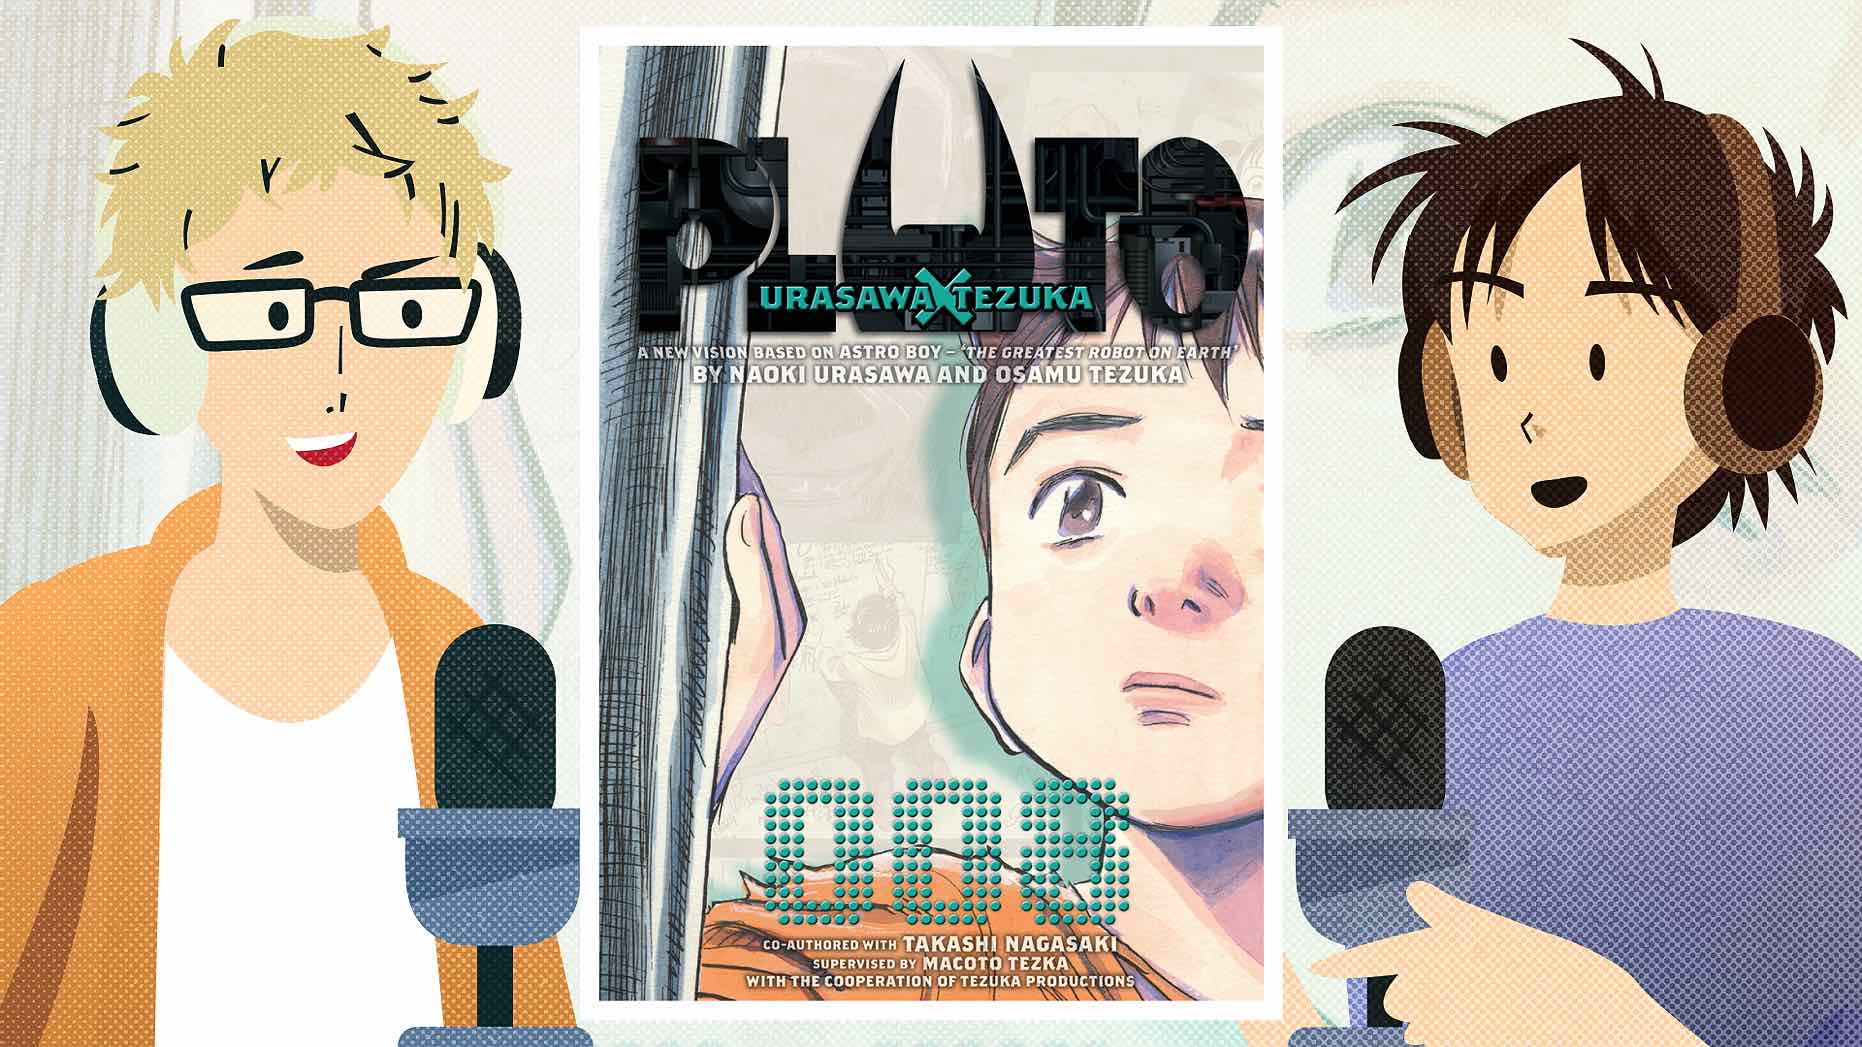 Pluto, Podcast, Manga, Anime, YouTube